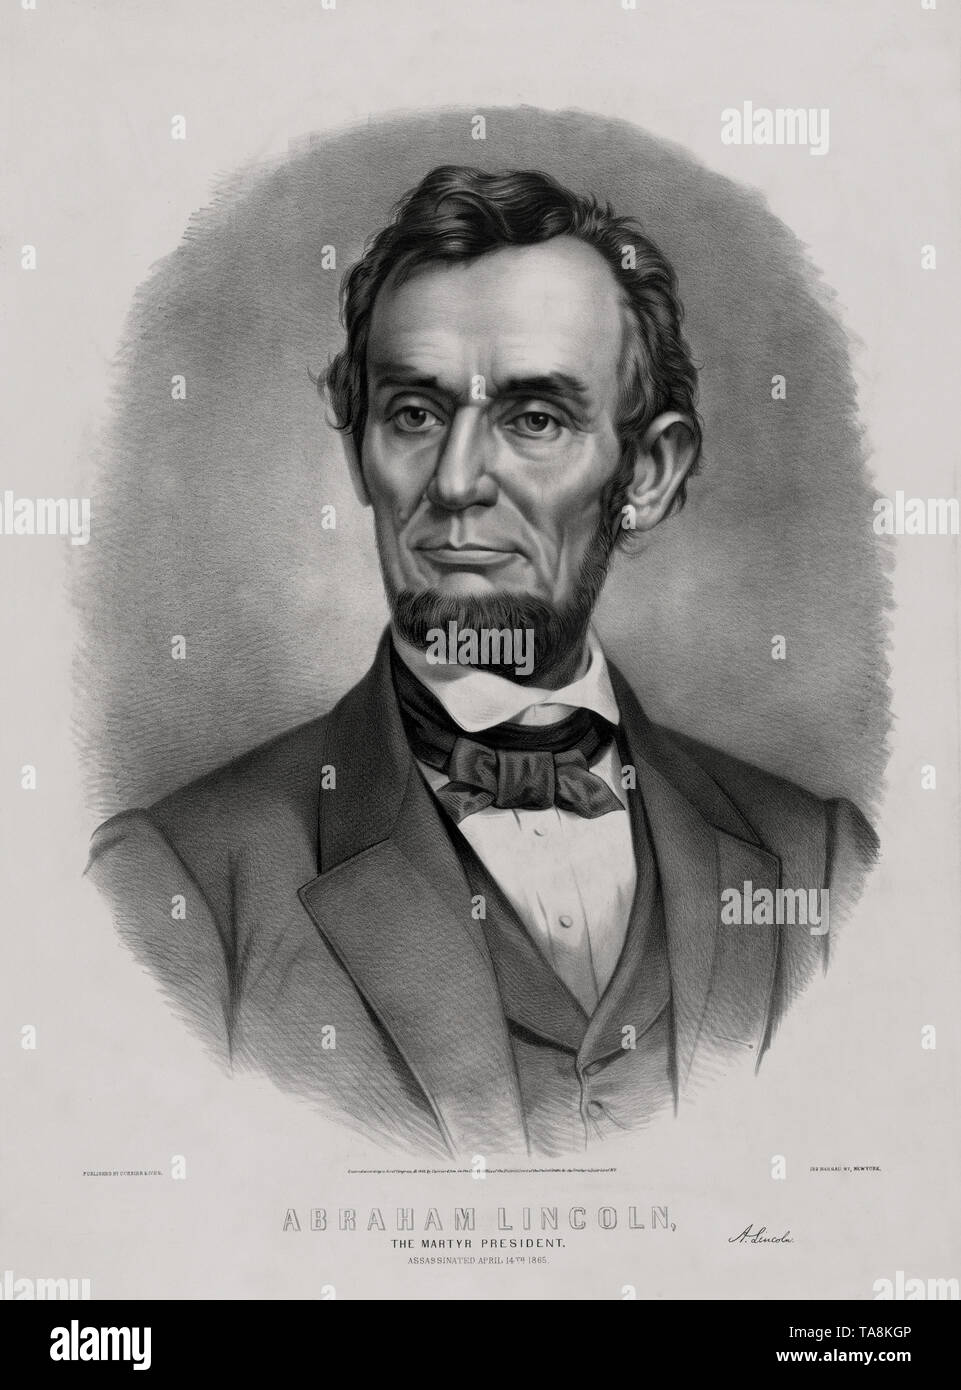 Abraham Lincoln, der Märtyrer Präsident, ermordet, 14. April 1865, von Currier & Ives, New York, 1865 veröffentlicht. Stockfoto